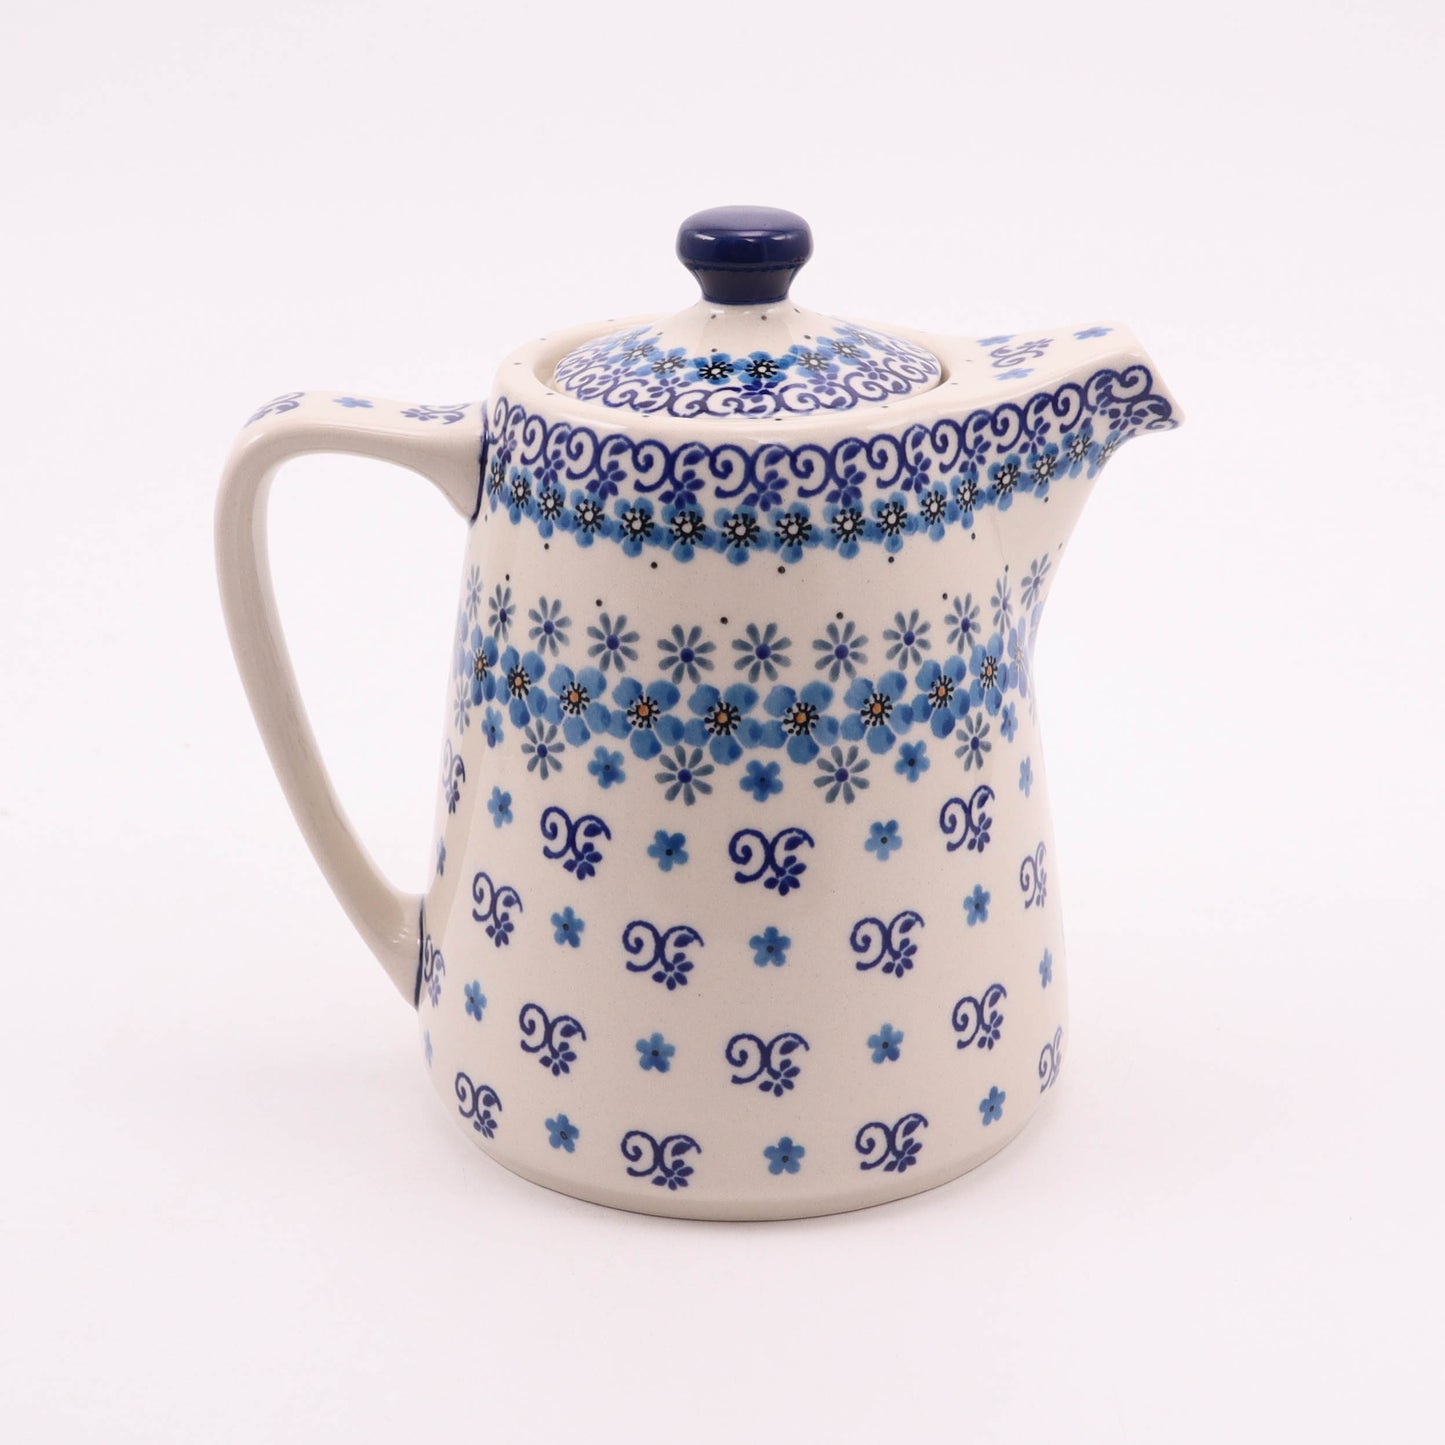 34oz Modern Teapot. Pattern: Country Charm